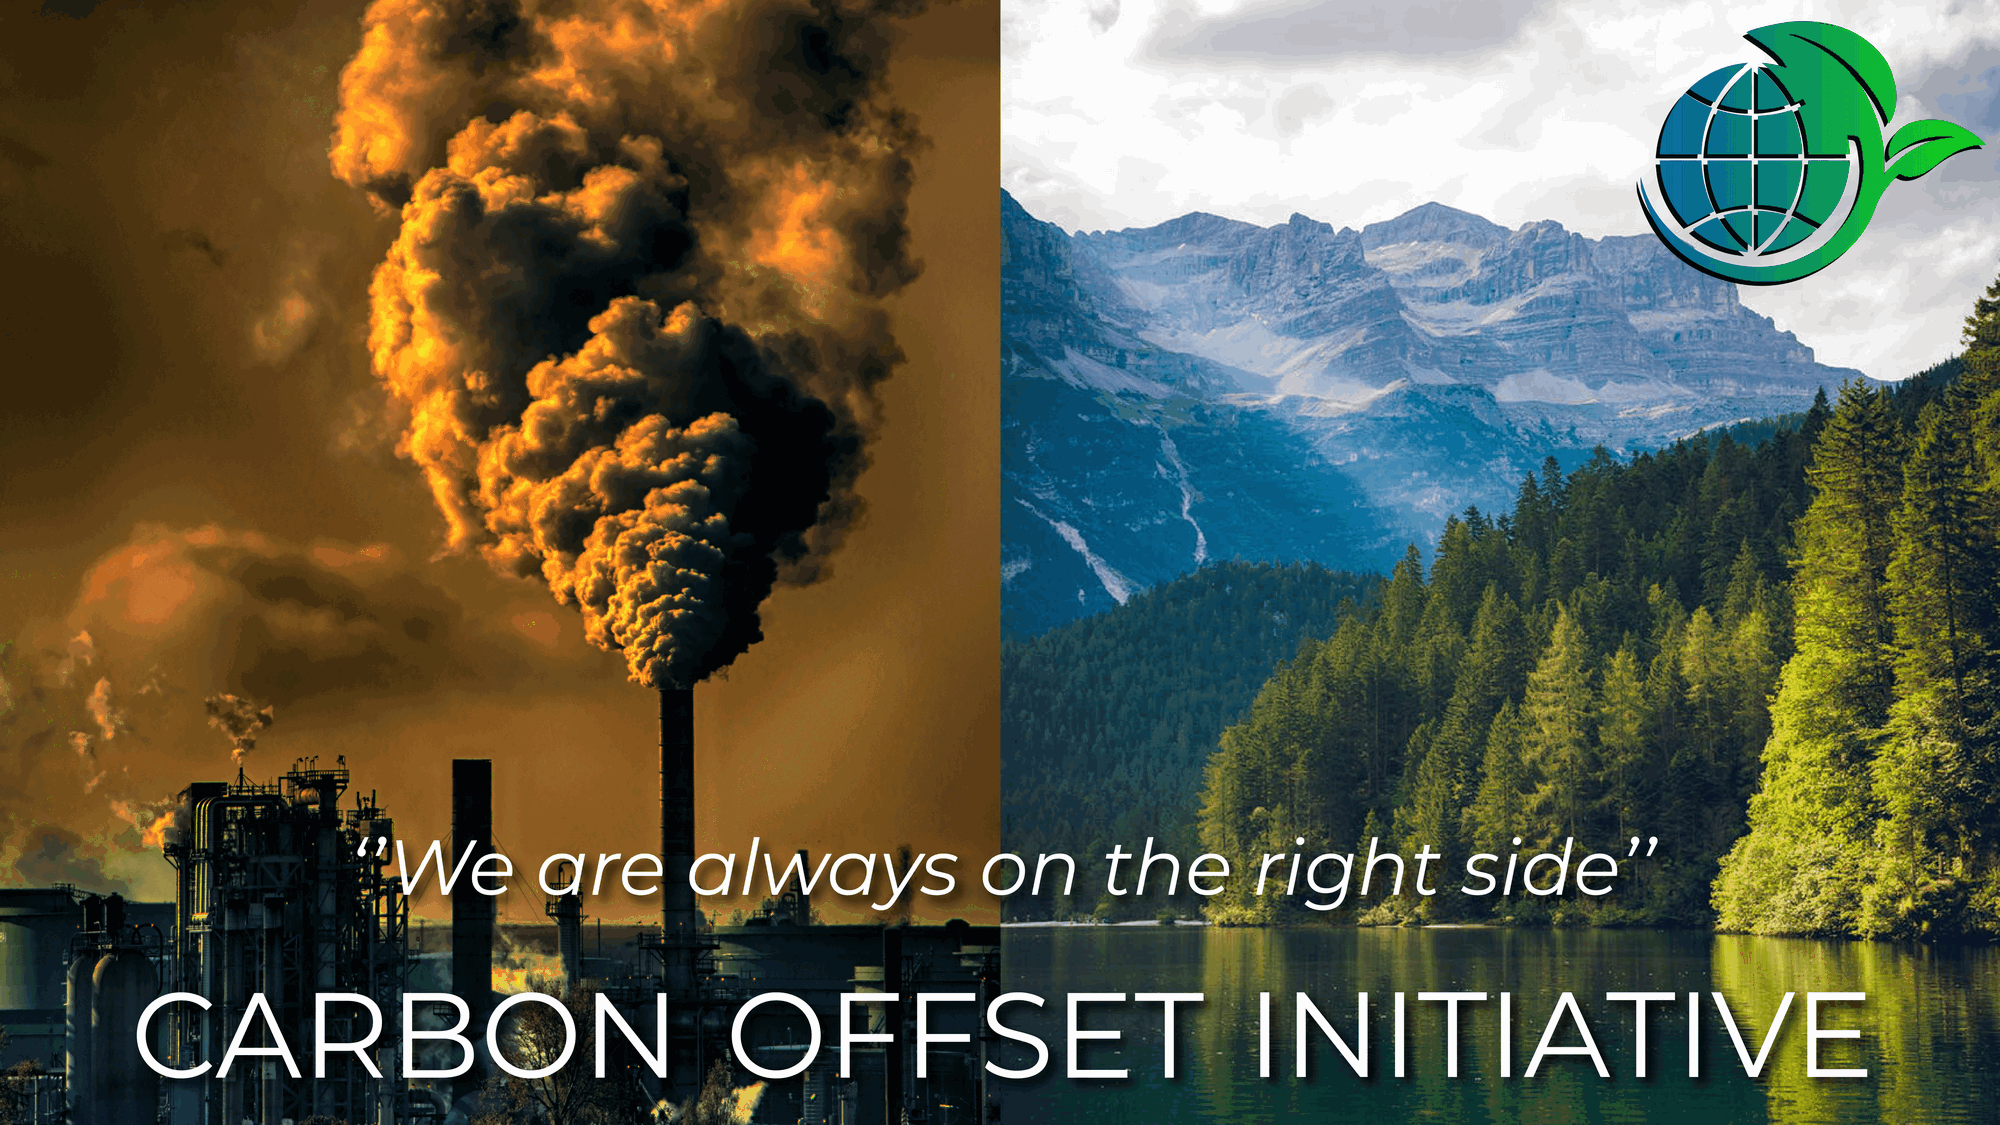 Carbon Offset Initiative COI Rehberi: Carbon Offset Initiative (COI) nedir? COI'ye yatırım yapılır mı?